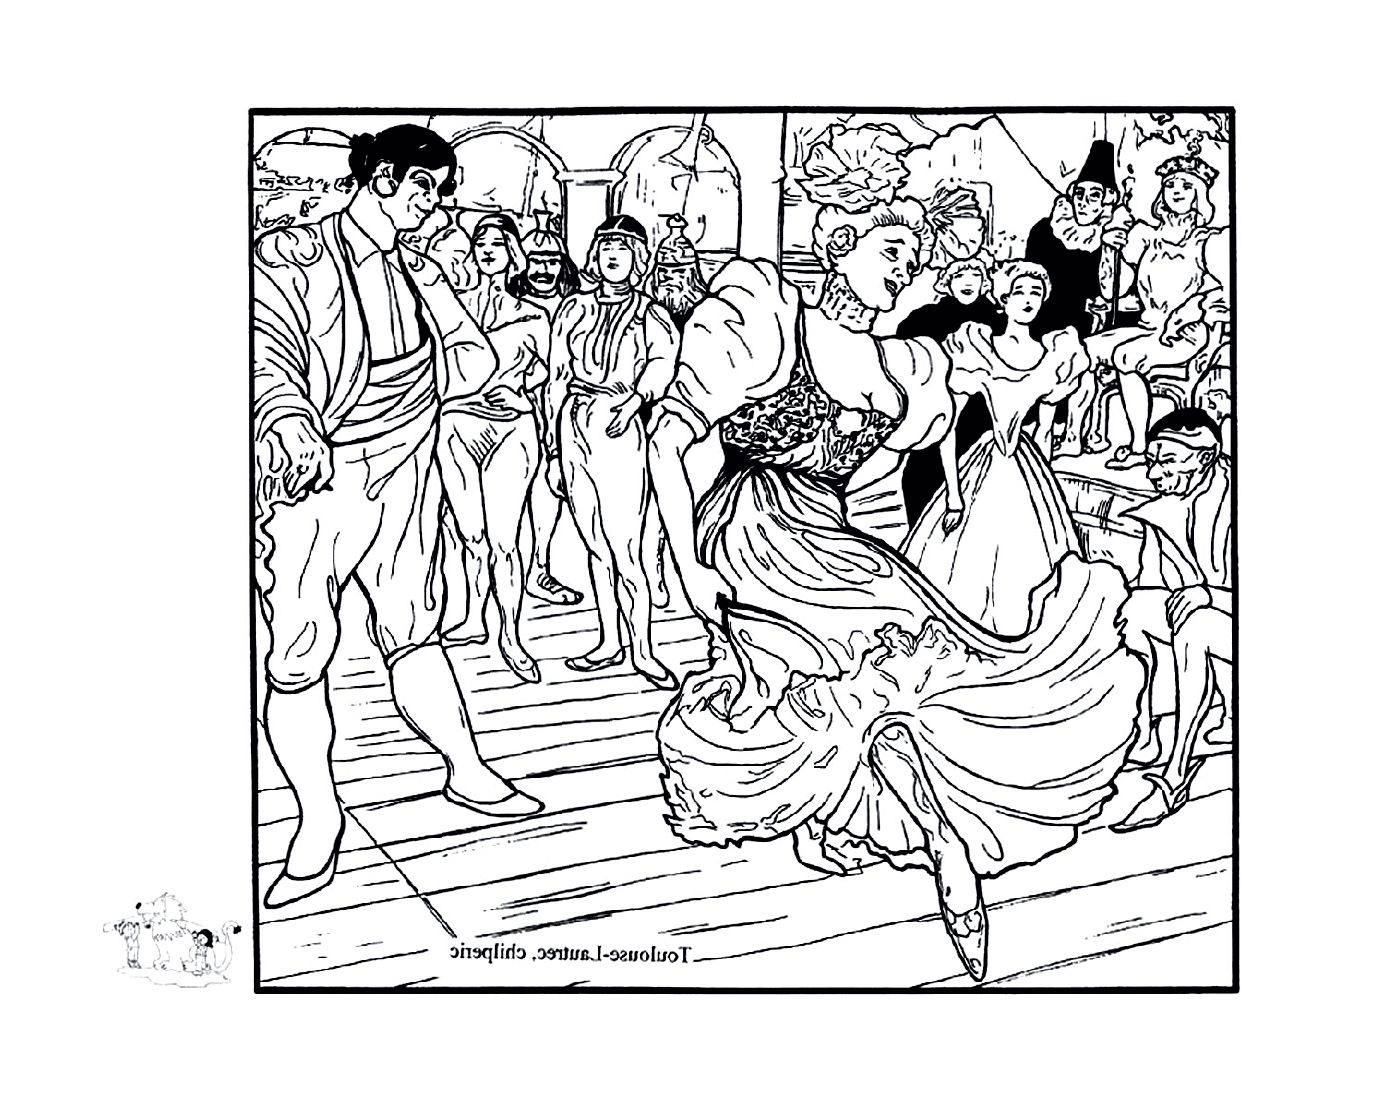  pessoas que dançam em uma festa como Toulouse-Lautrec 